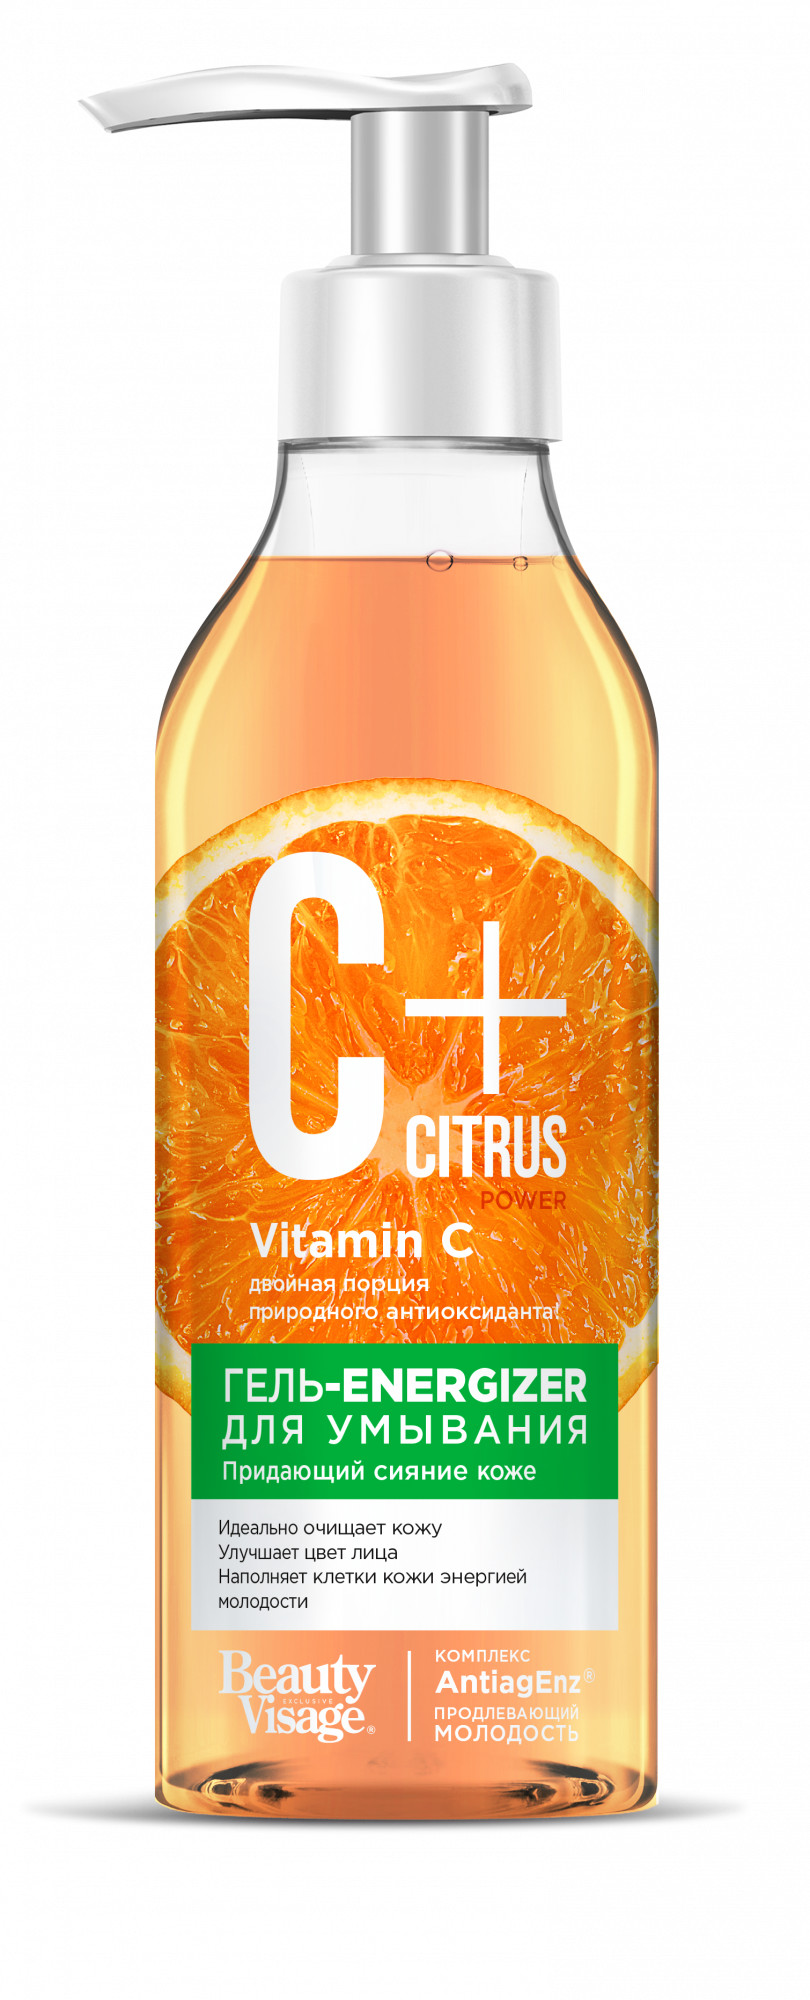 Гель-energizer для умывания Фитокосметик, C+Citrus,  для сияния кожи,  240 мл